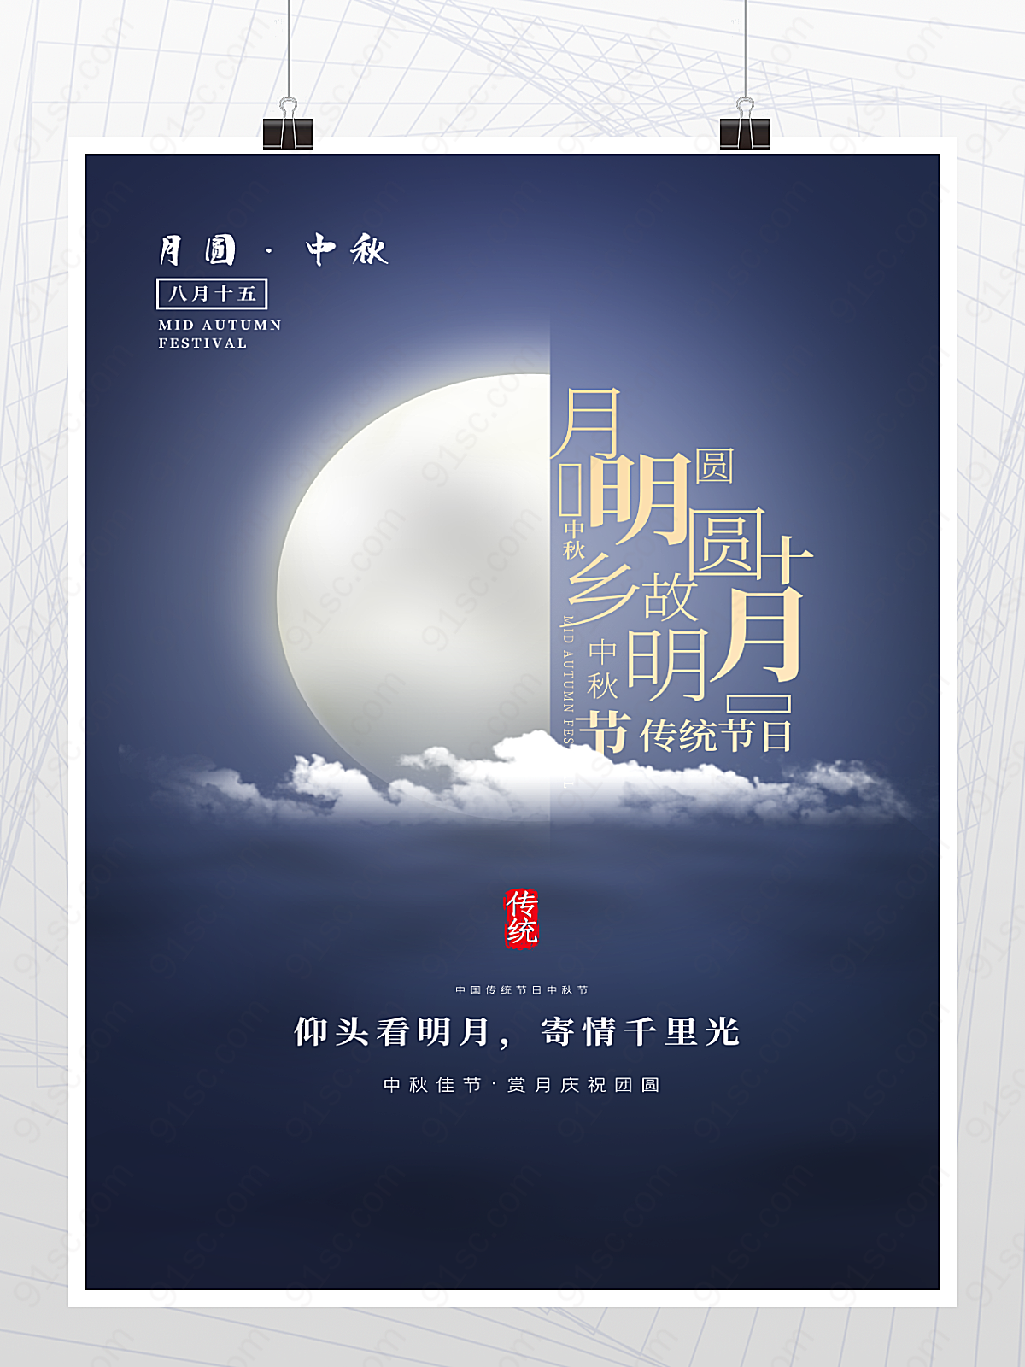 中国传统节日中秋节海报图片